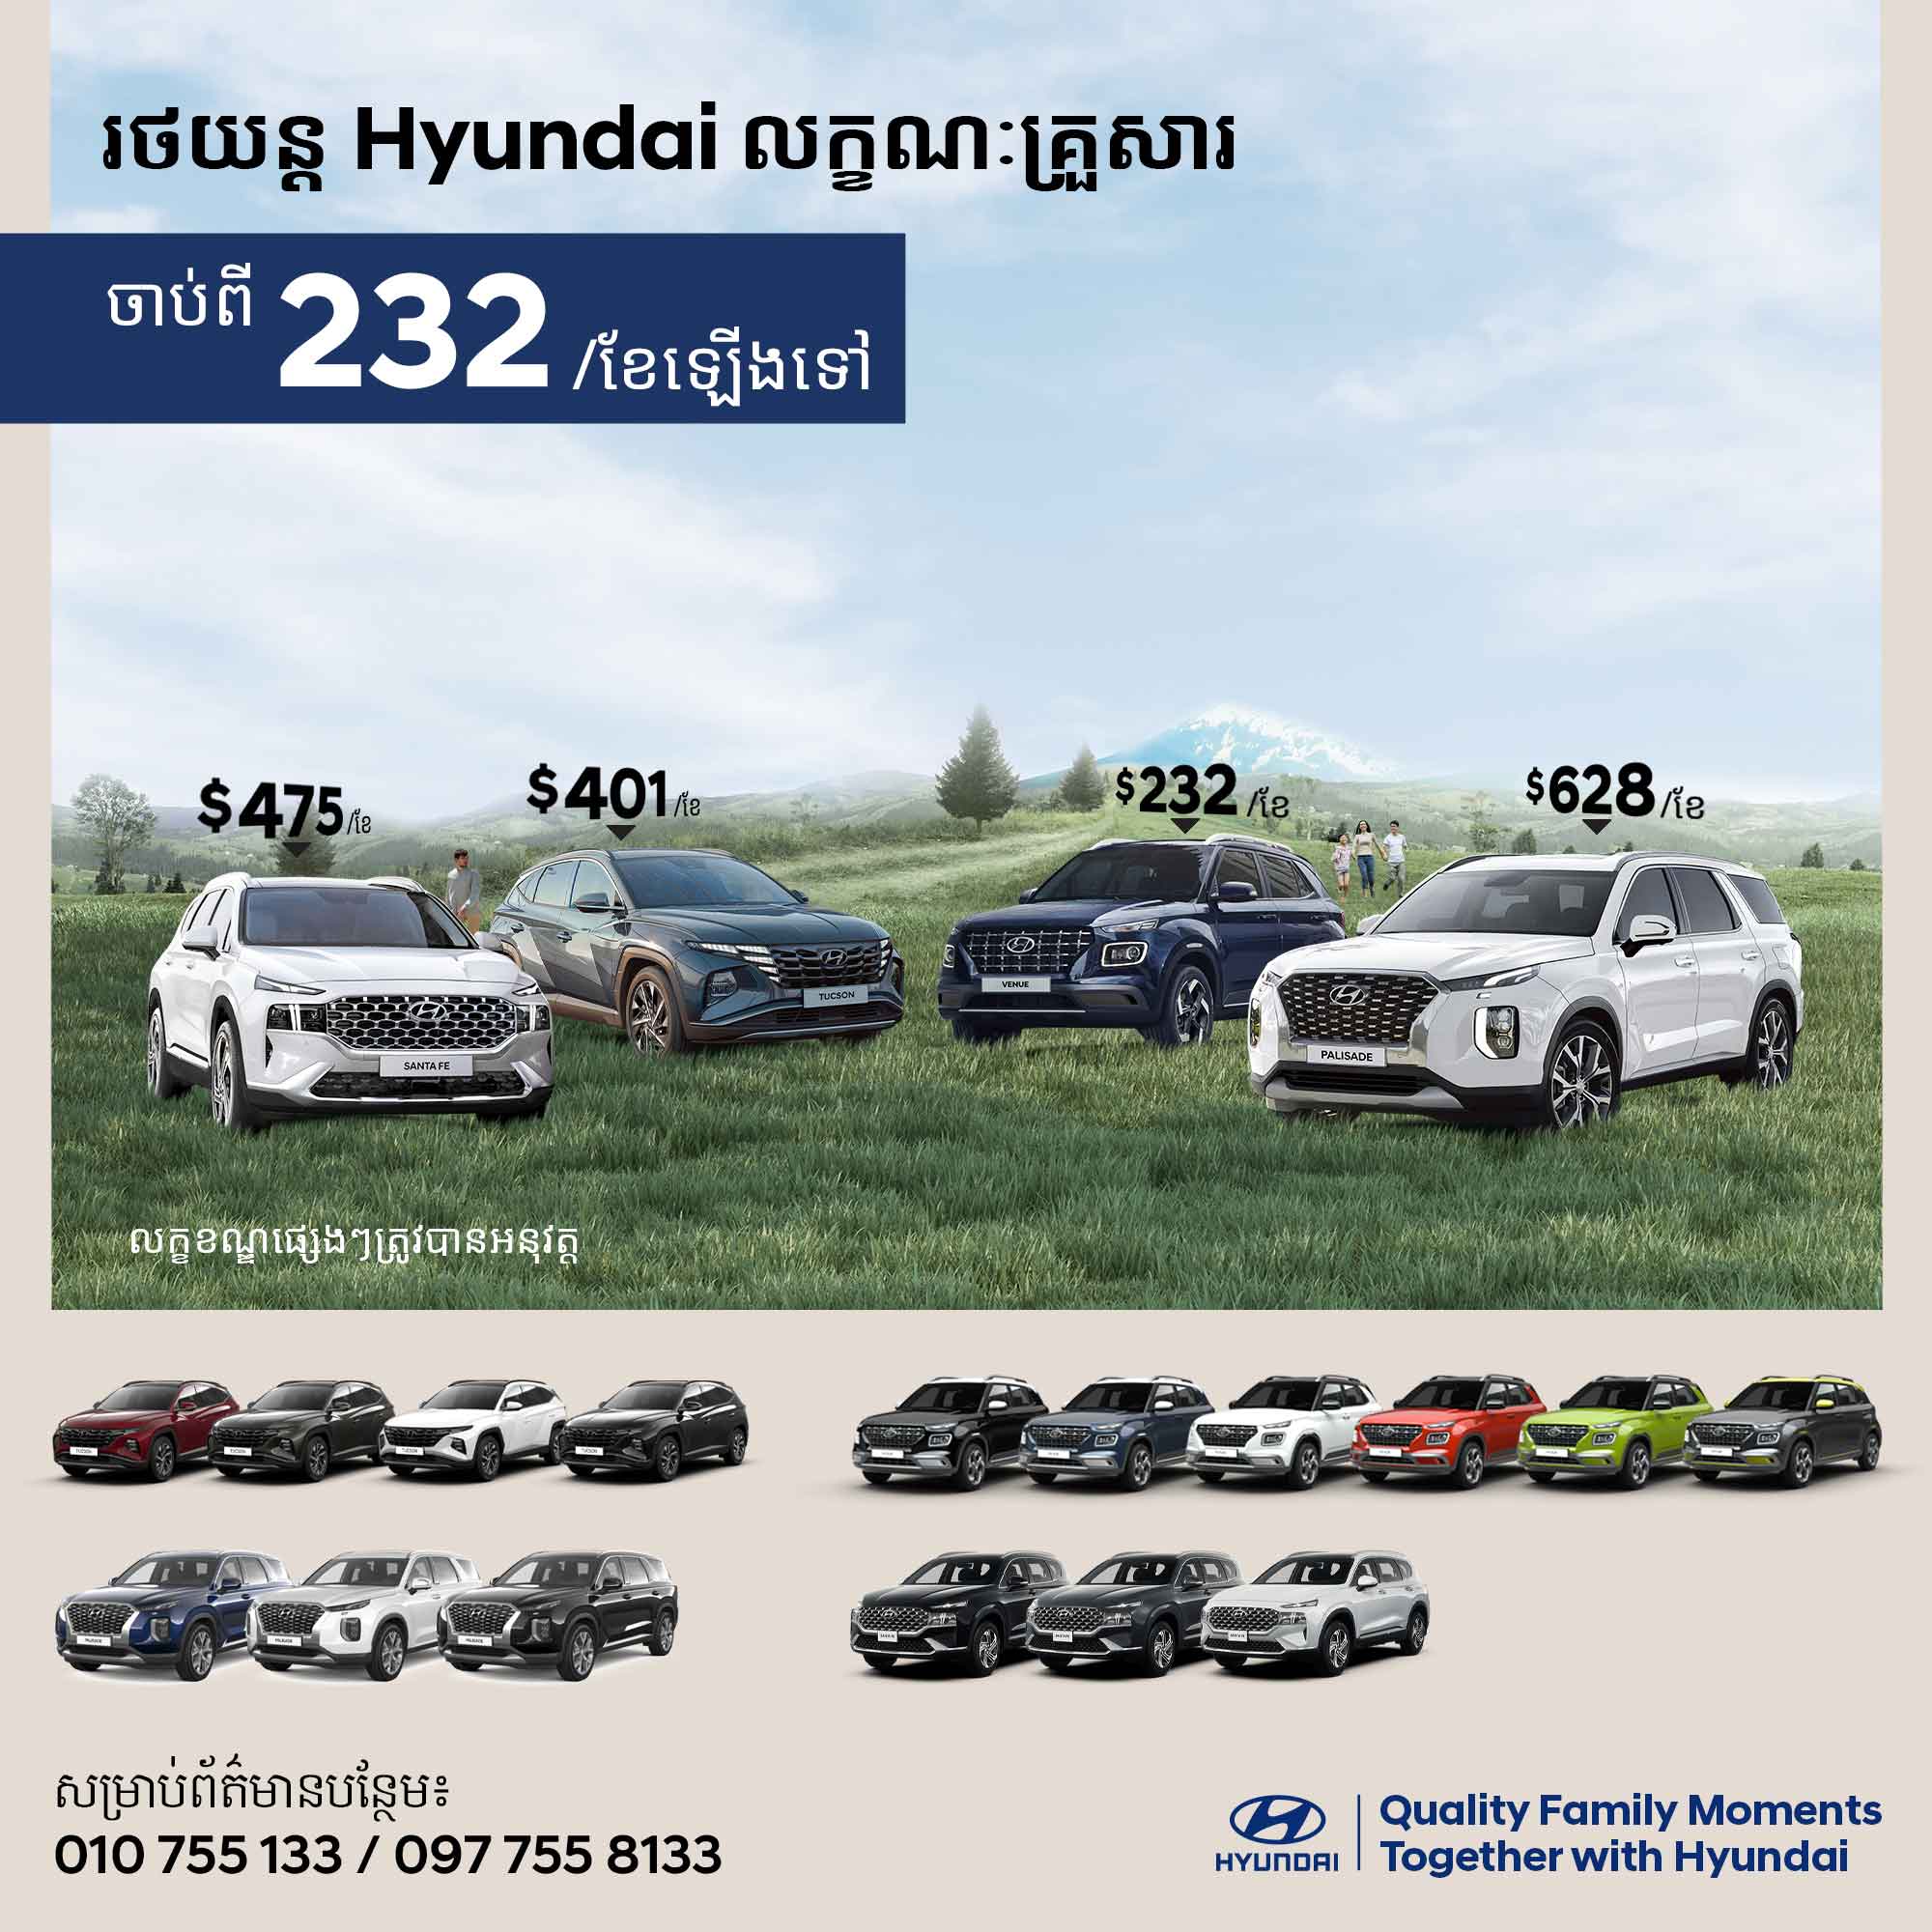 👨‍👩‍👧‍👦 ពេលវេលាគ្រួសារដ៏មានតម្លៃជាមួយរថយន្ត Hyundai 💙